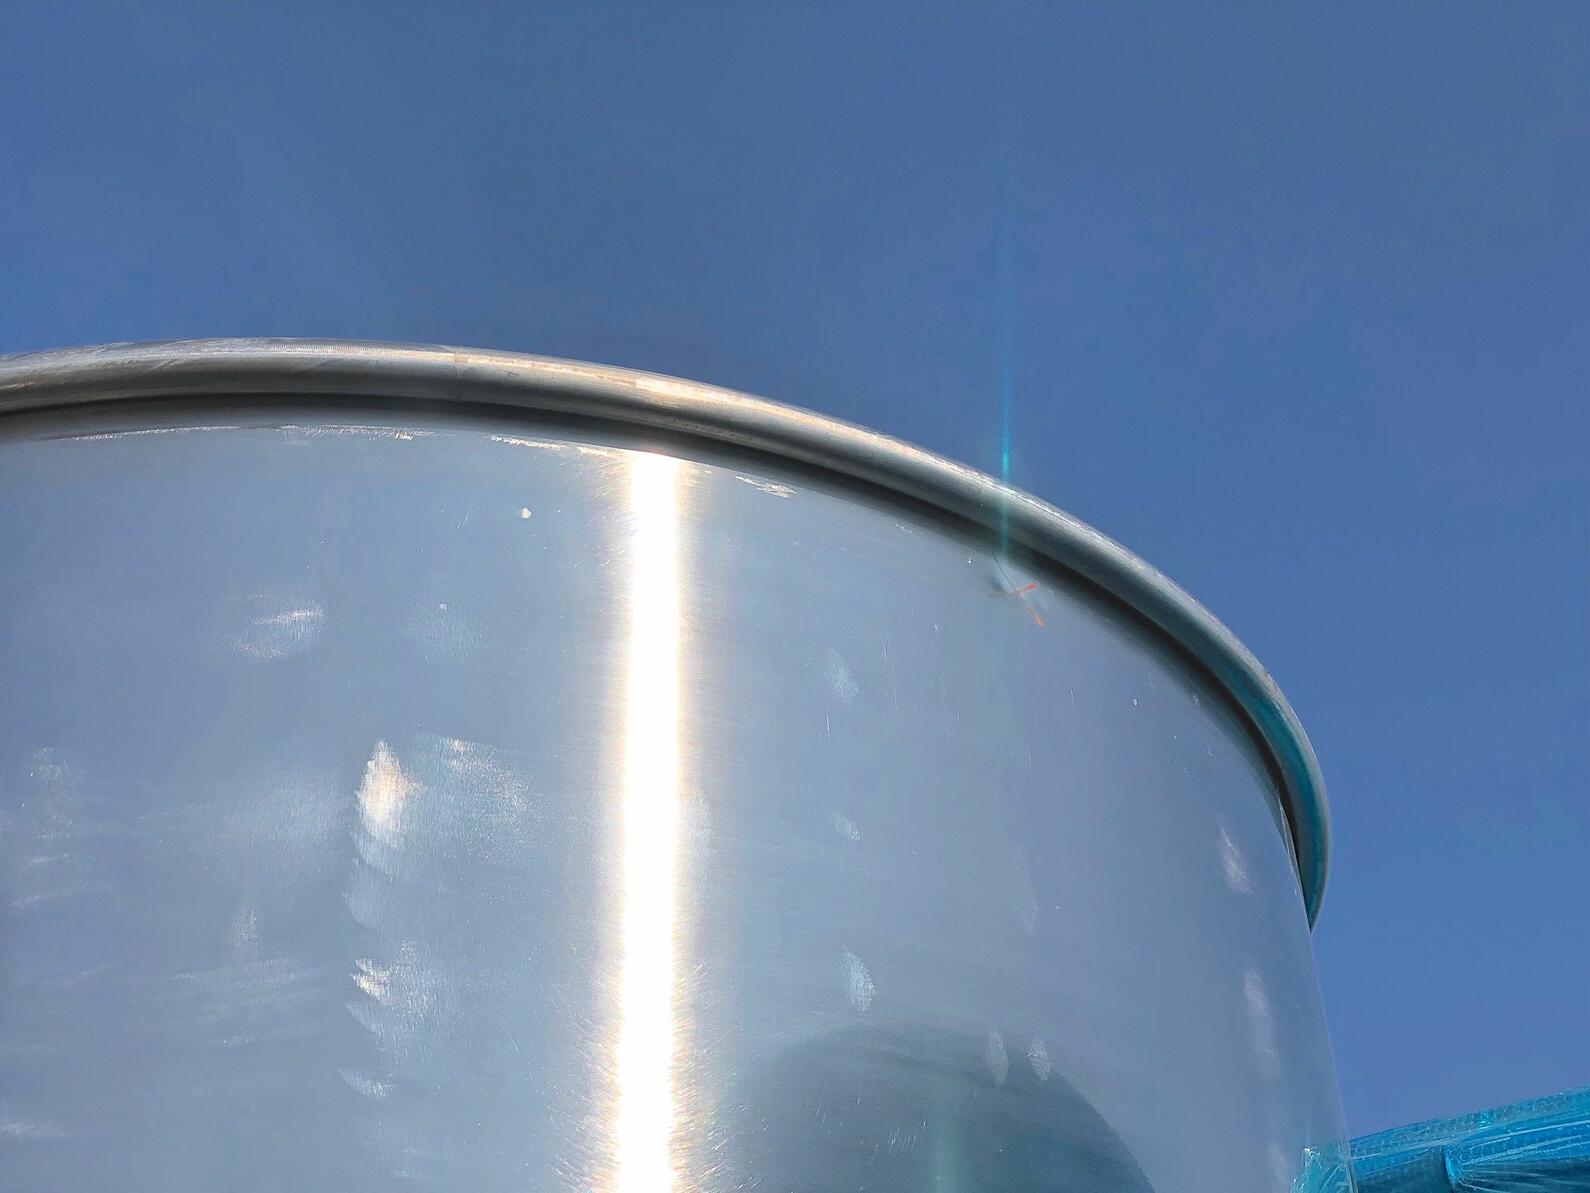 Cuve à chapeau flottant en INOX 304 - avec anneaux de refroidissement